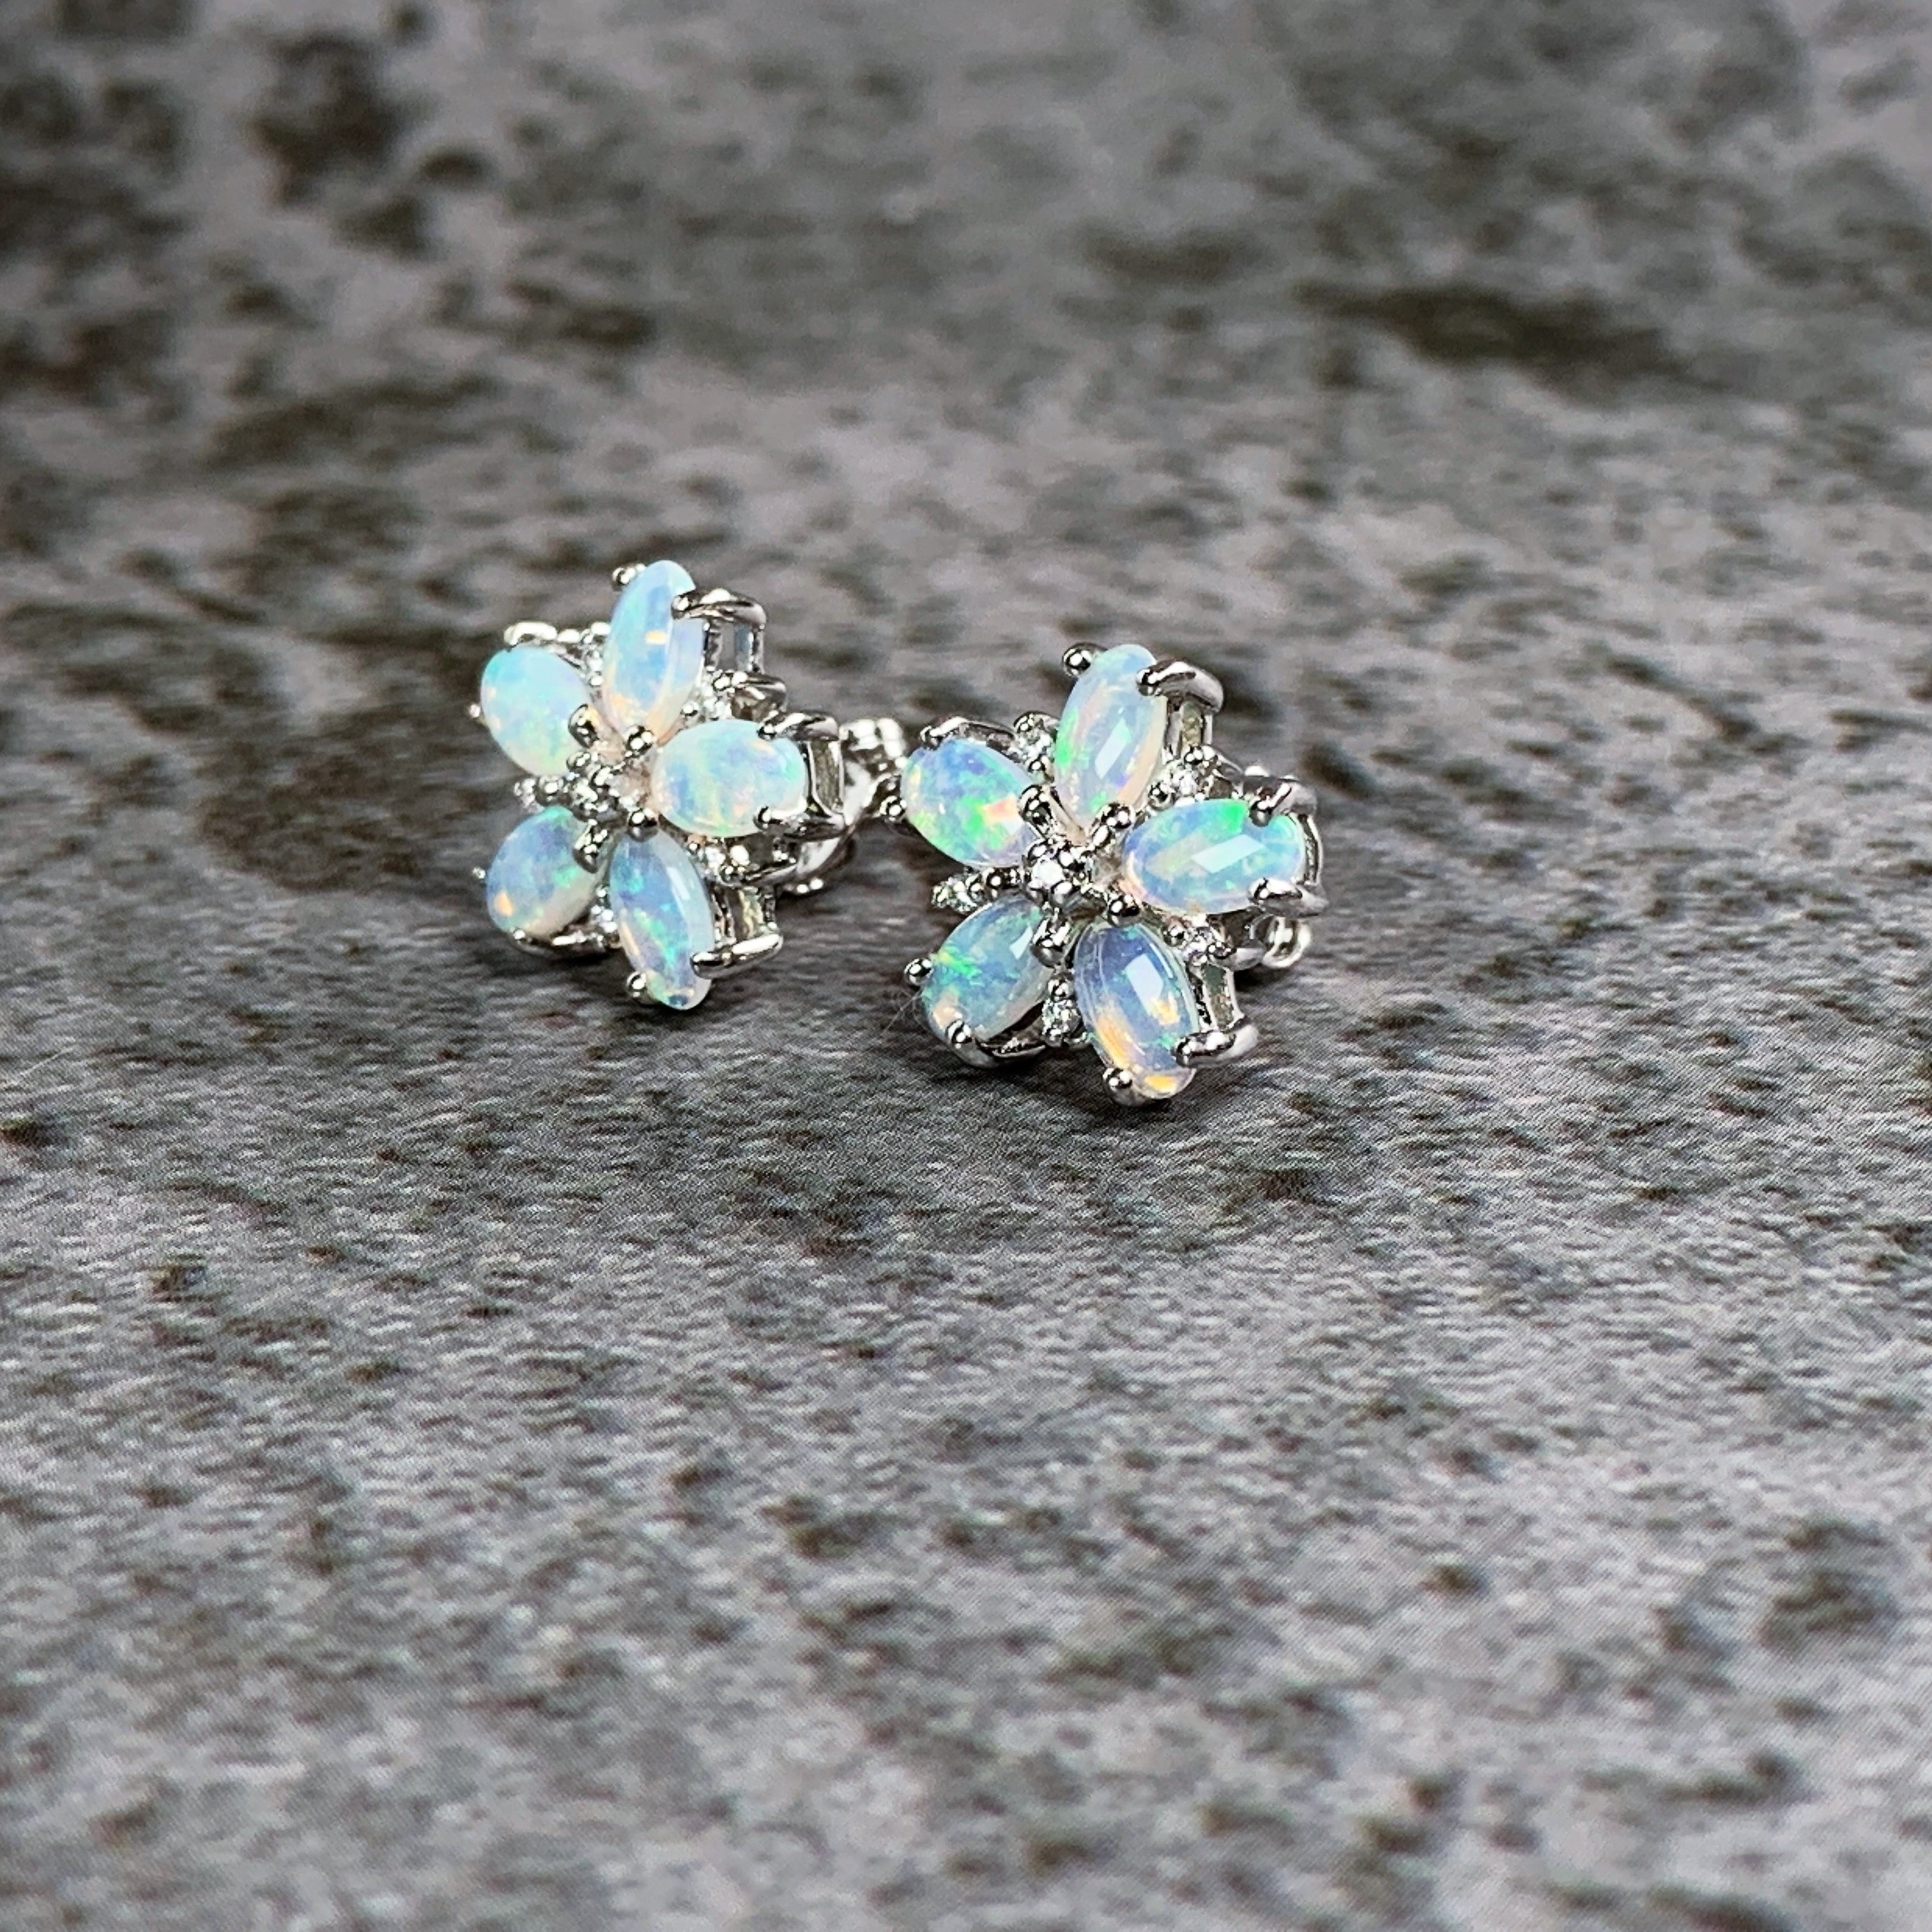 Sterling silver Opal floral earrings - Masterpiece Jewellery Opal & Gems Sydney Australia | Online Shop